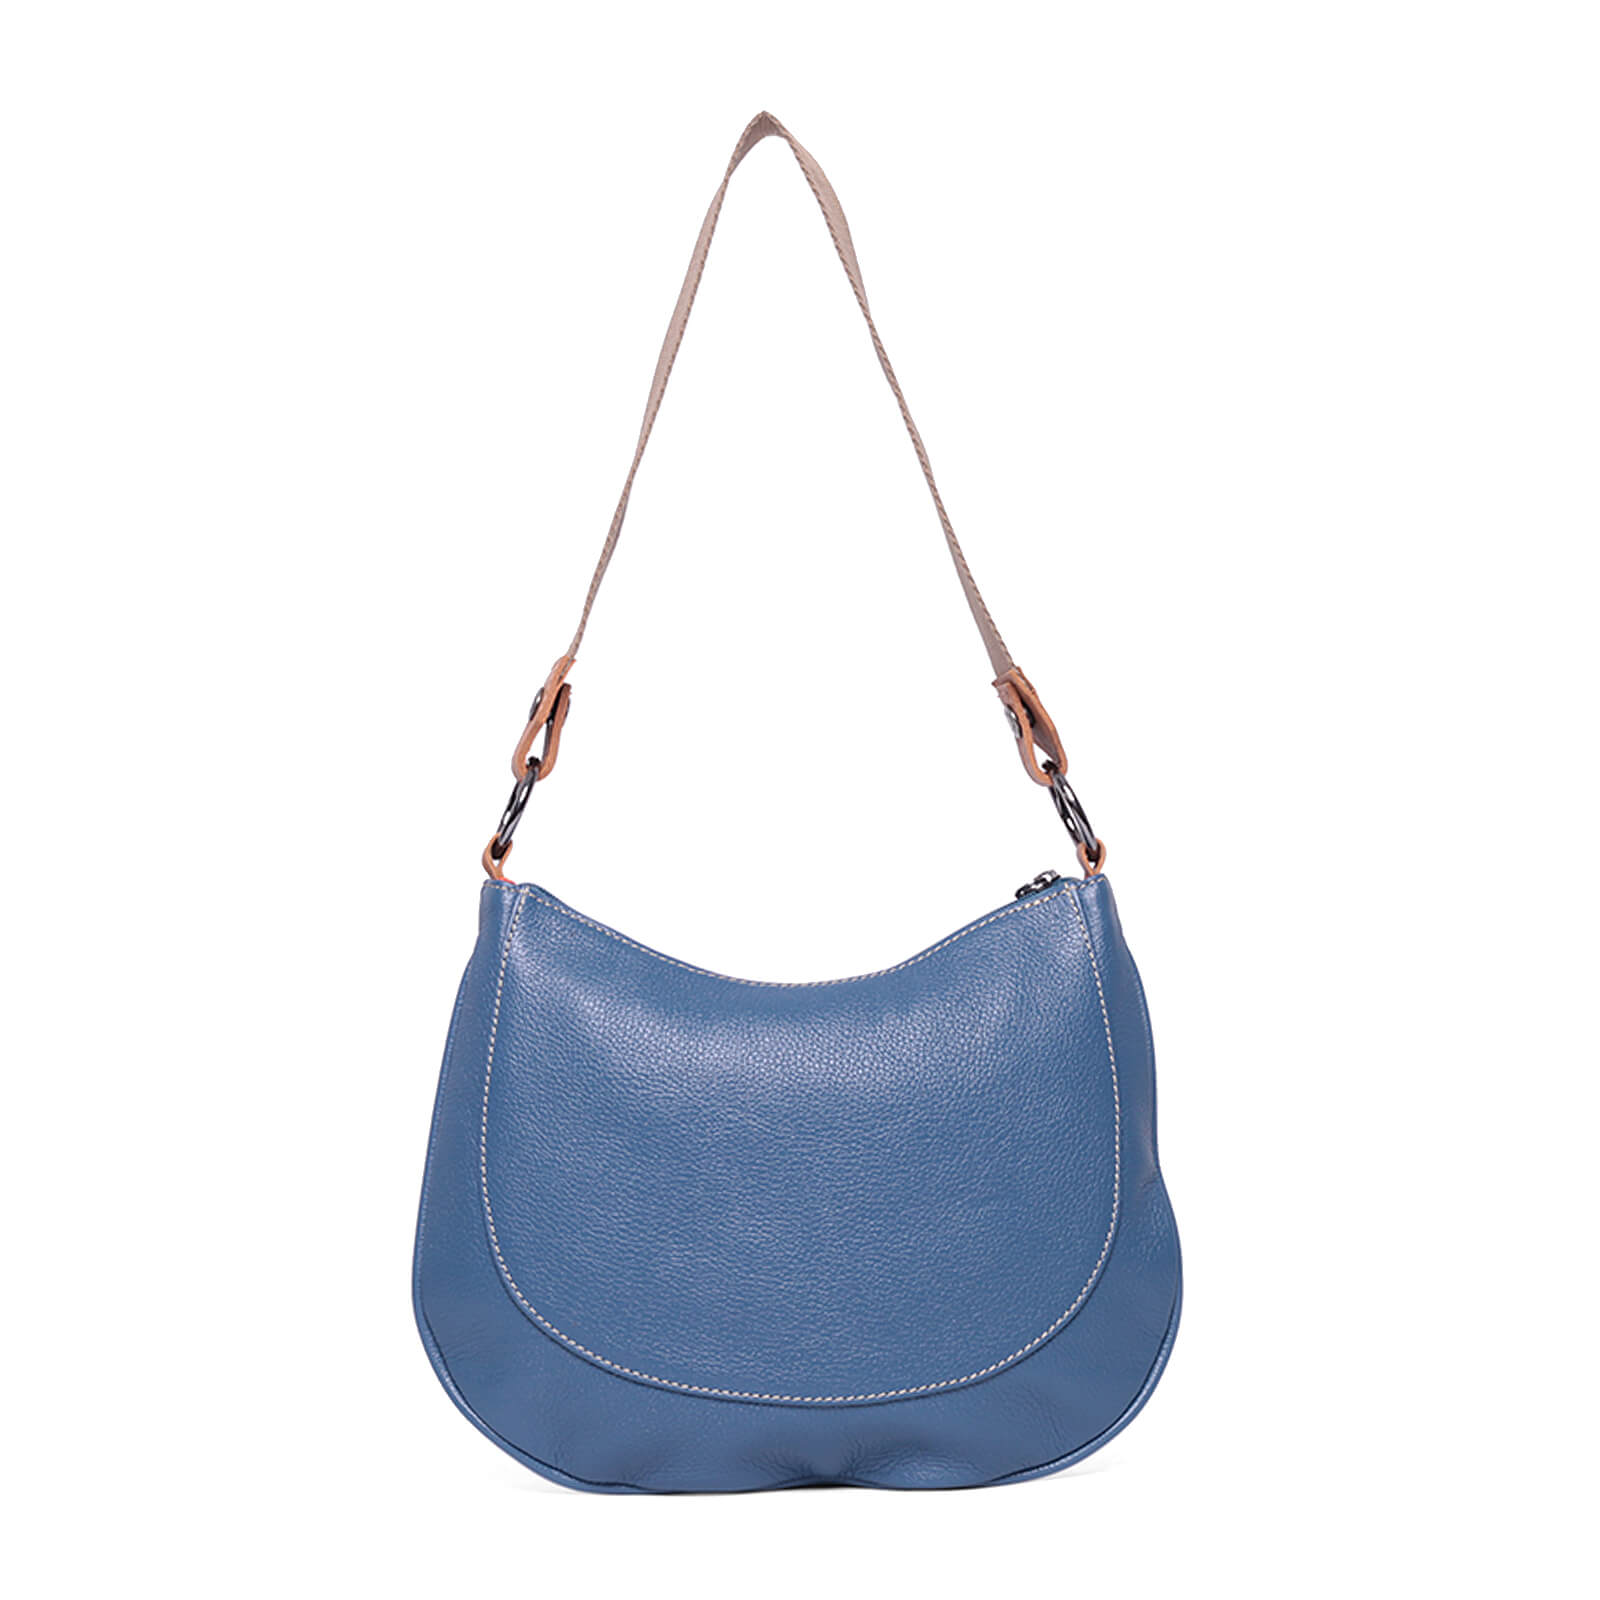 bolsa-multiuso-couro-61108-unclek-azul-claro-5